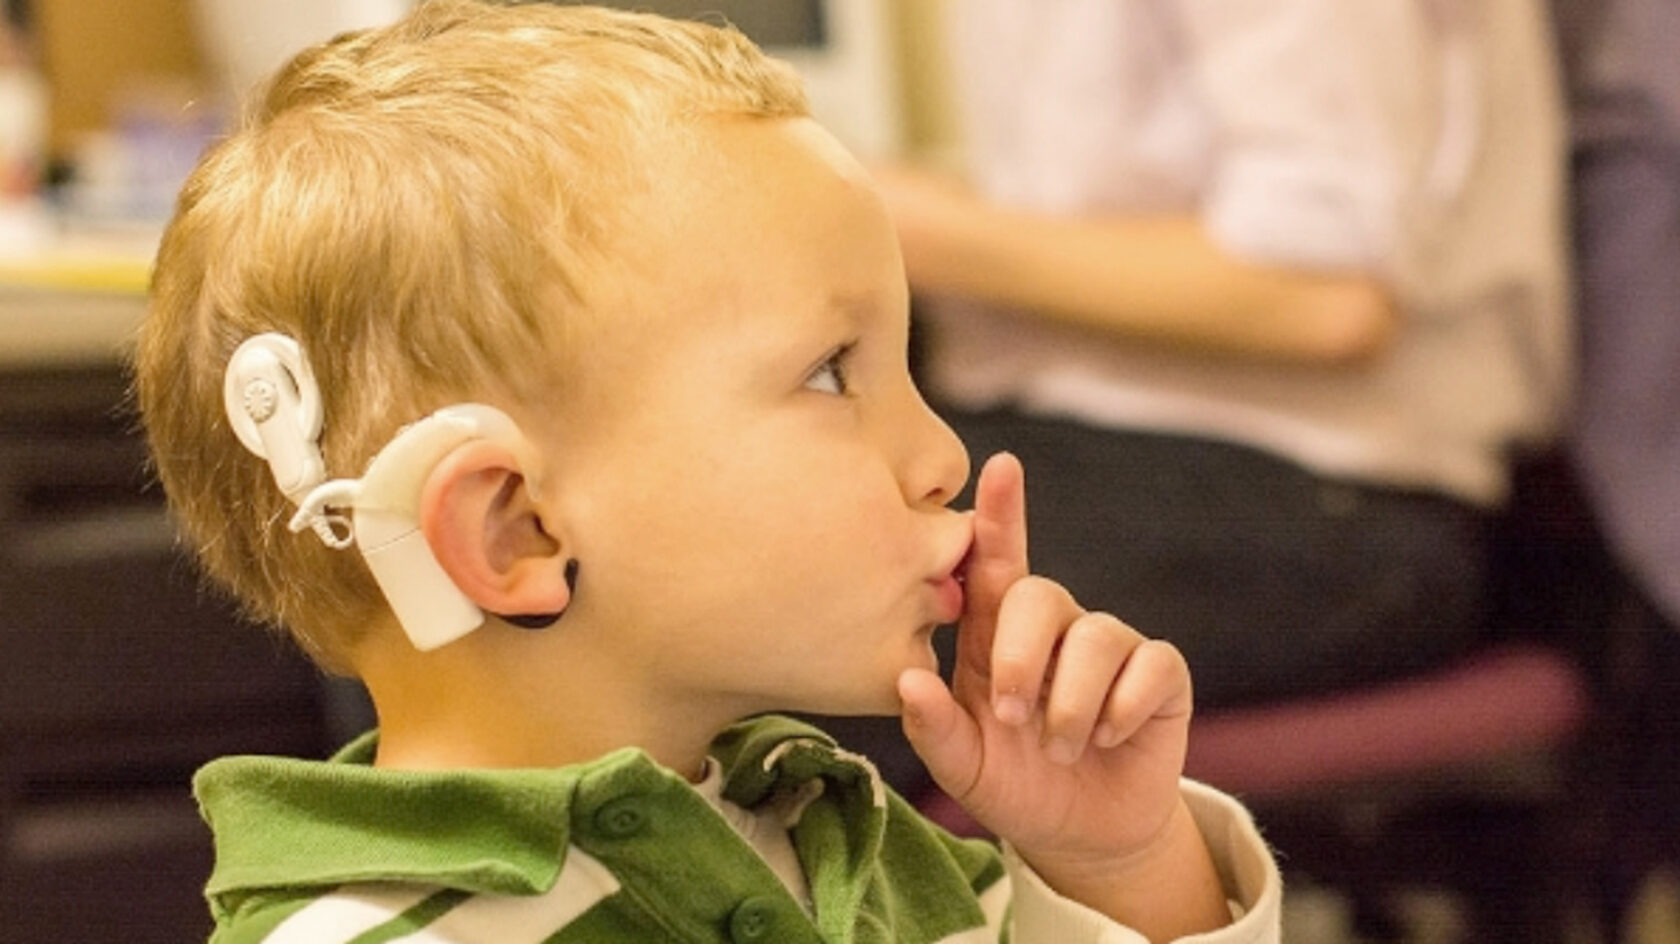 Стол одноместный с индивидуальным пультом для детей с нарушением слуха